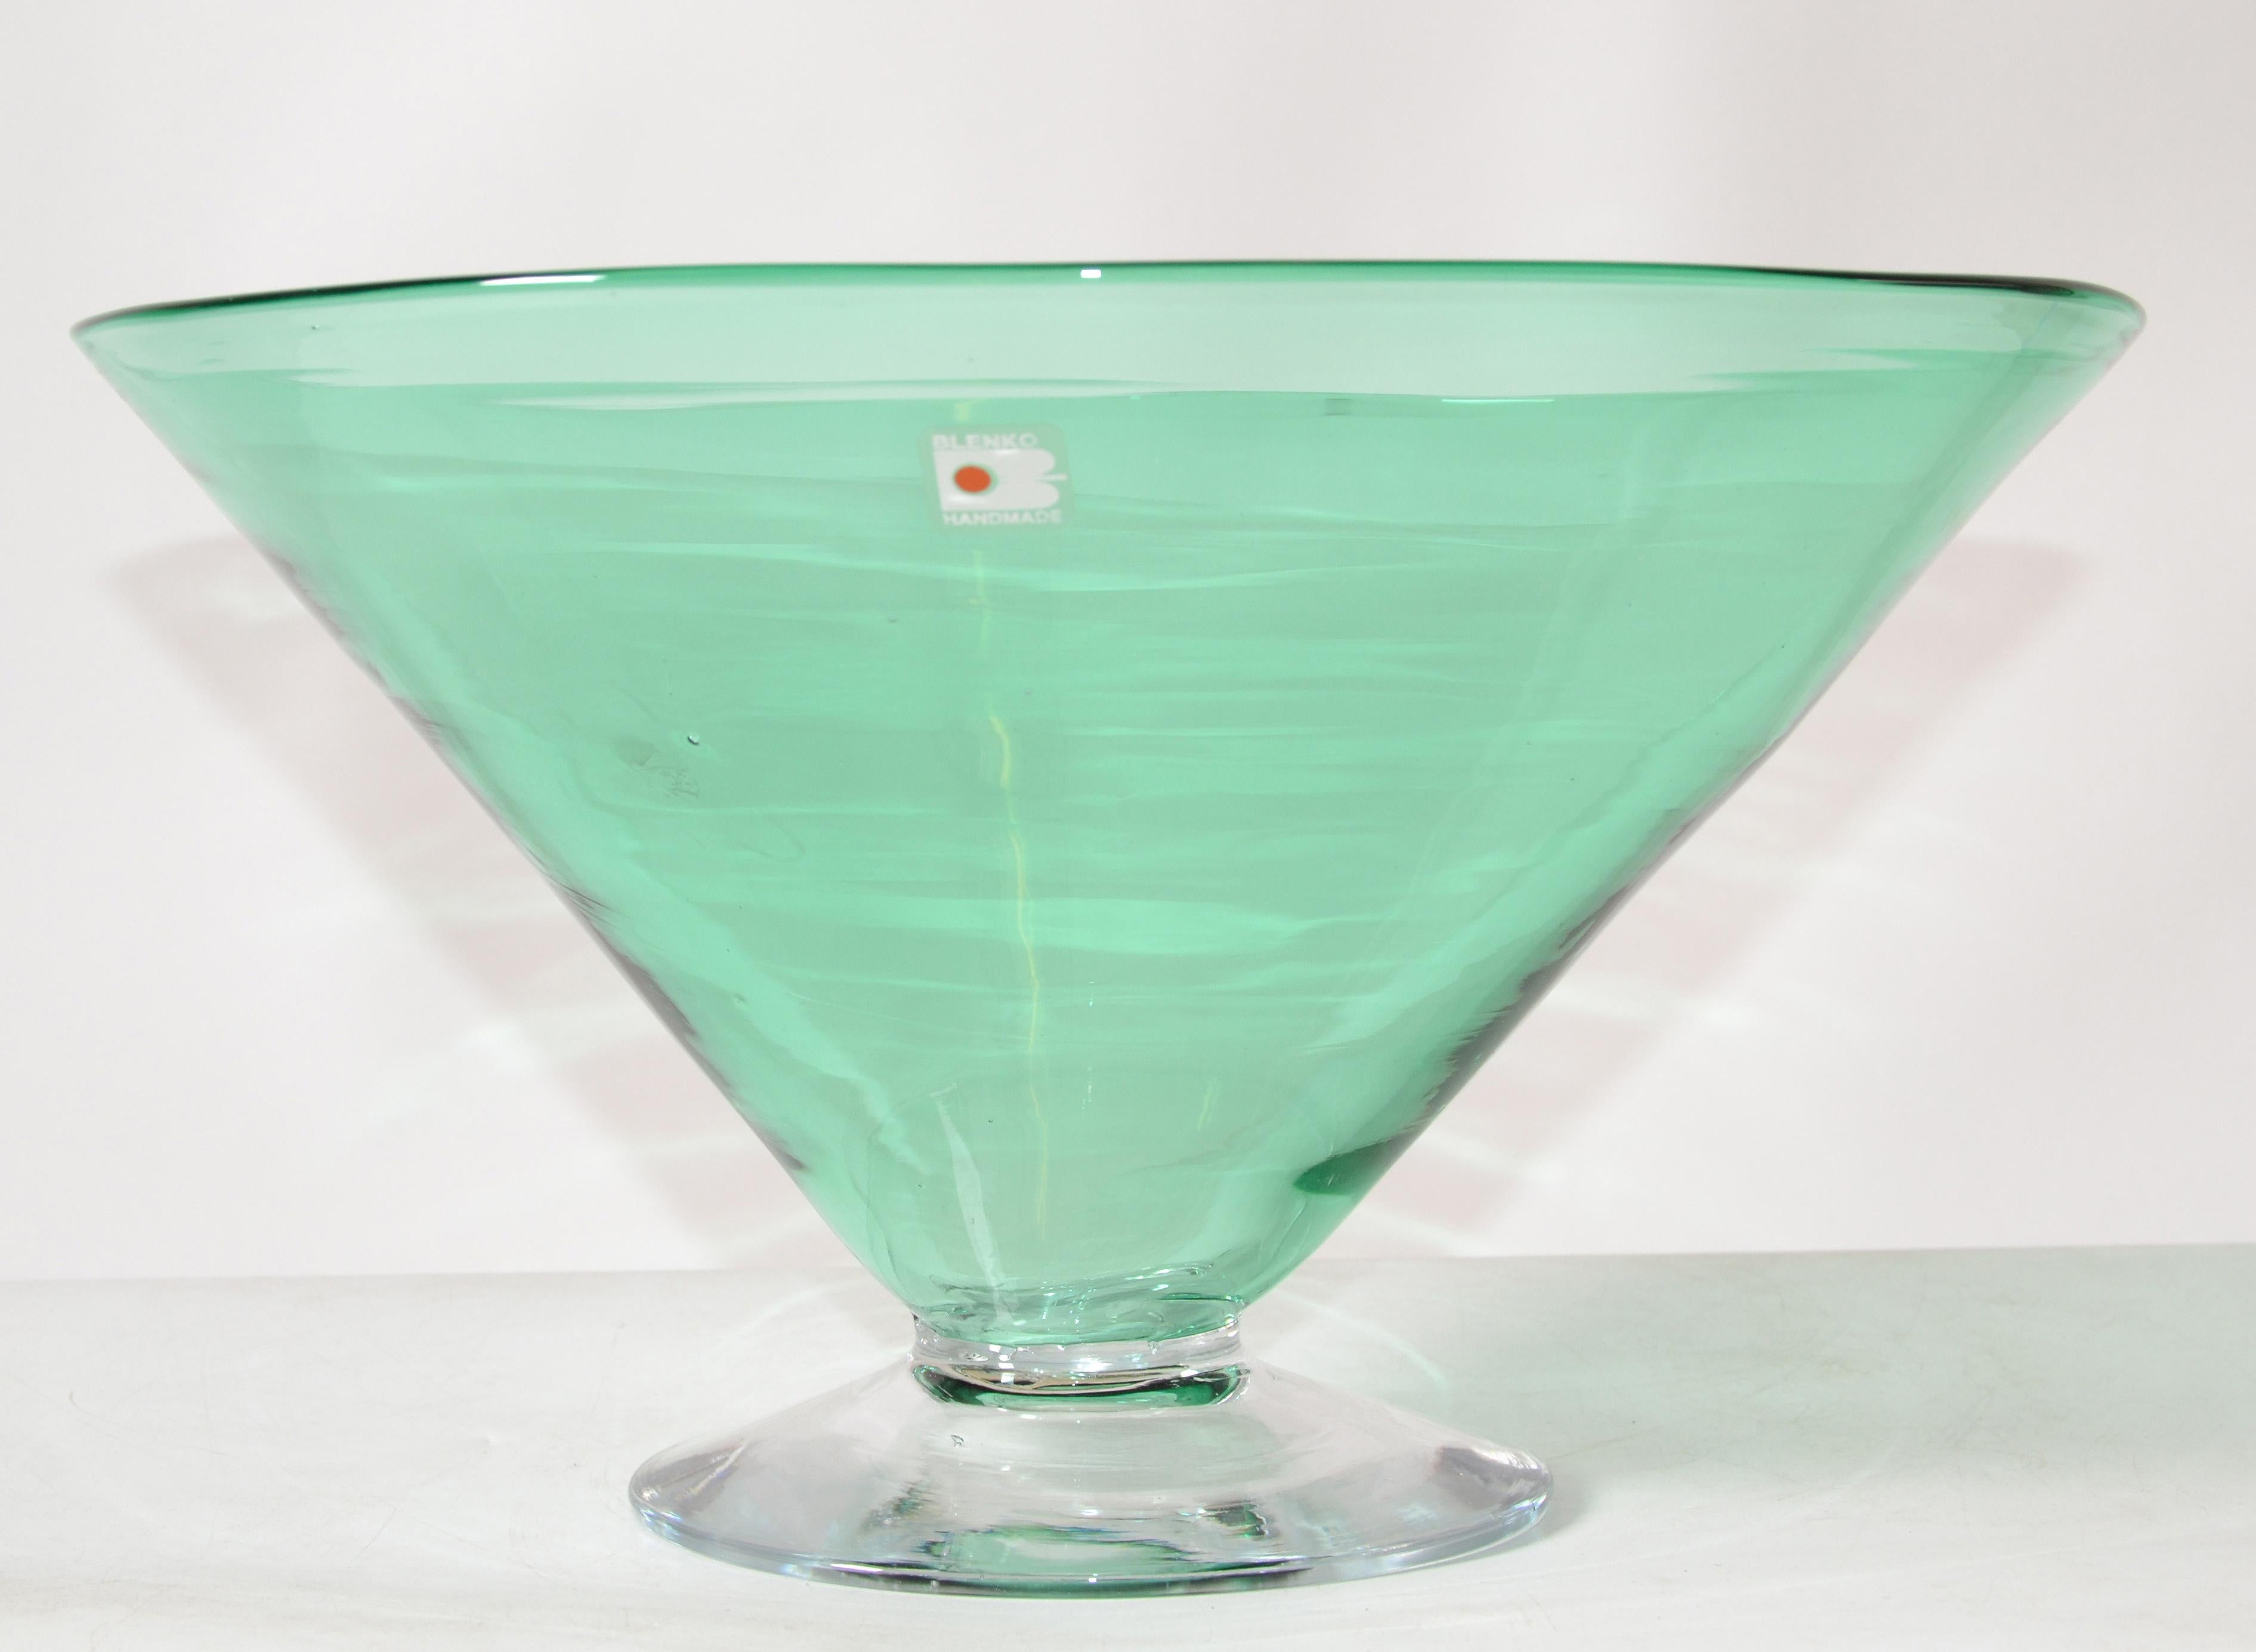 Marqué Blenko Mid-Century Modern handmade Art Glass Bowl made in America 1980.
Peut être utilisé comme bol de service ou comme centre de table.
Étiquette en aluminium sur le bol.